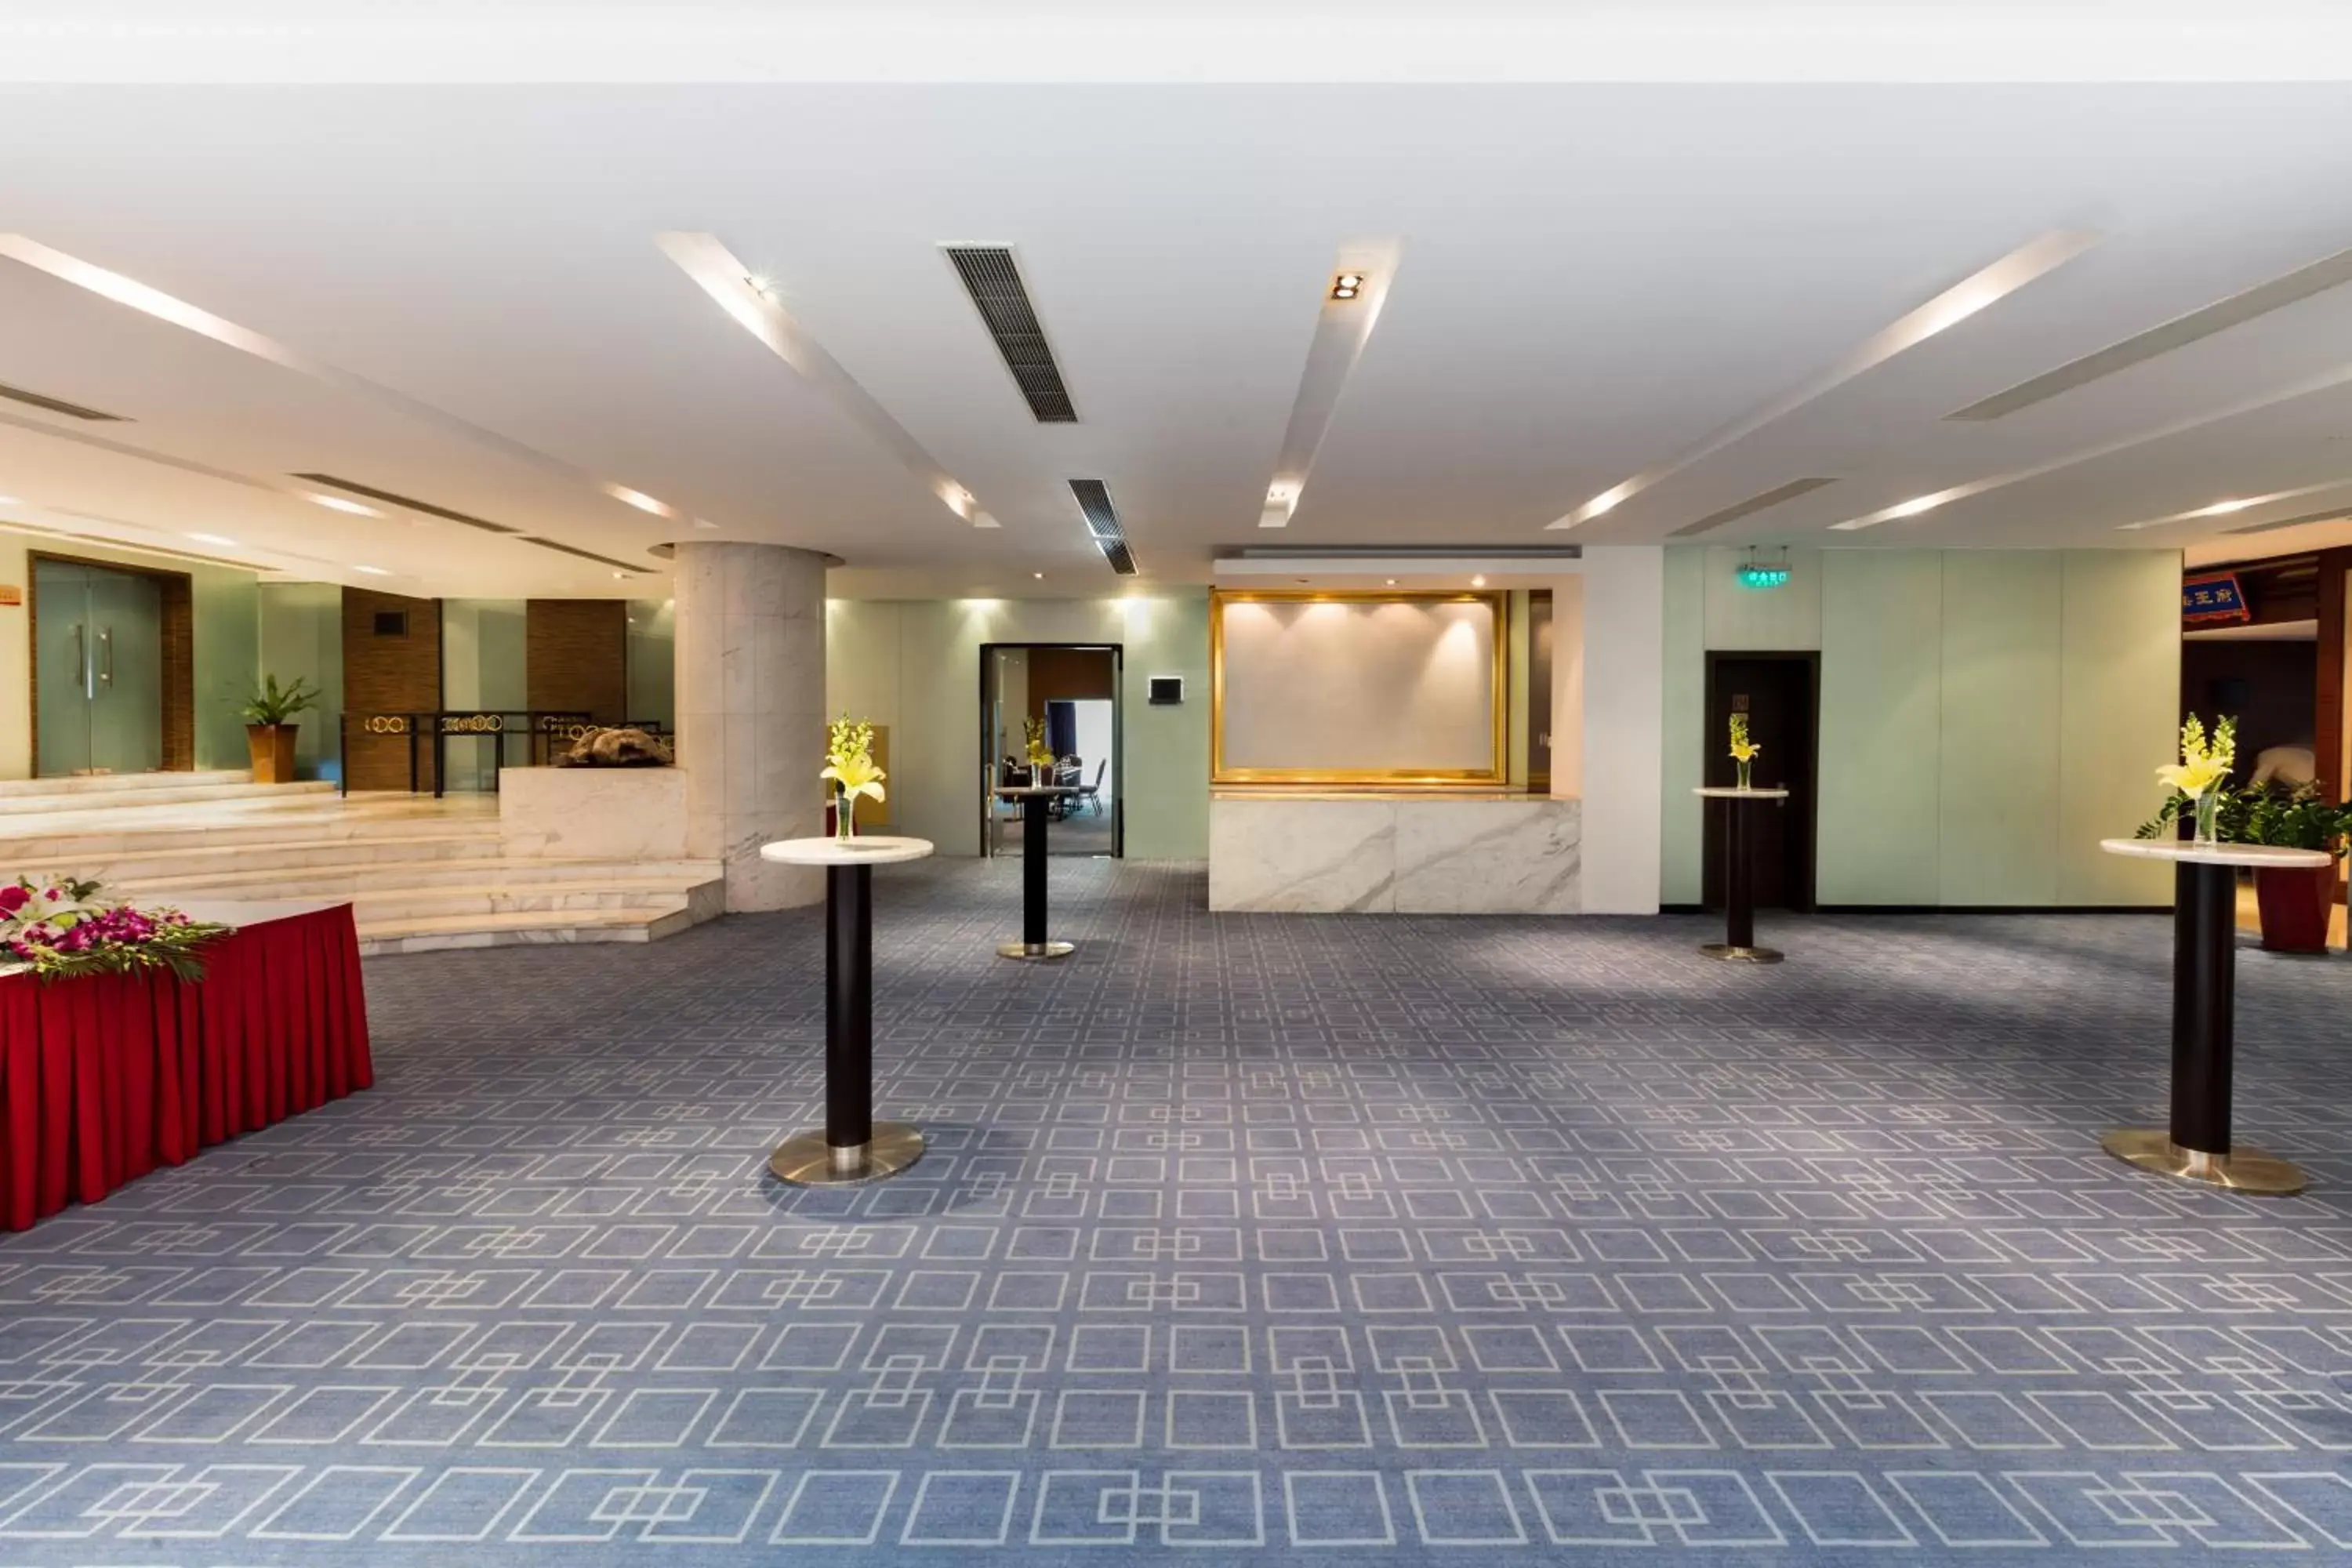 Meeting/conference room, Lobby/Reception in Guo Ji Yi Yuan Hotel